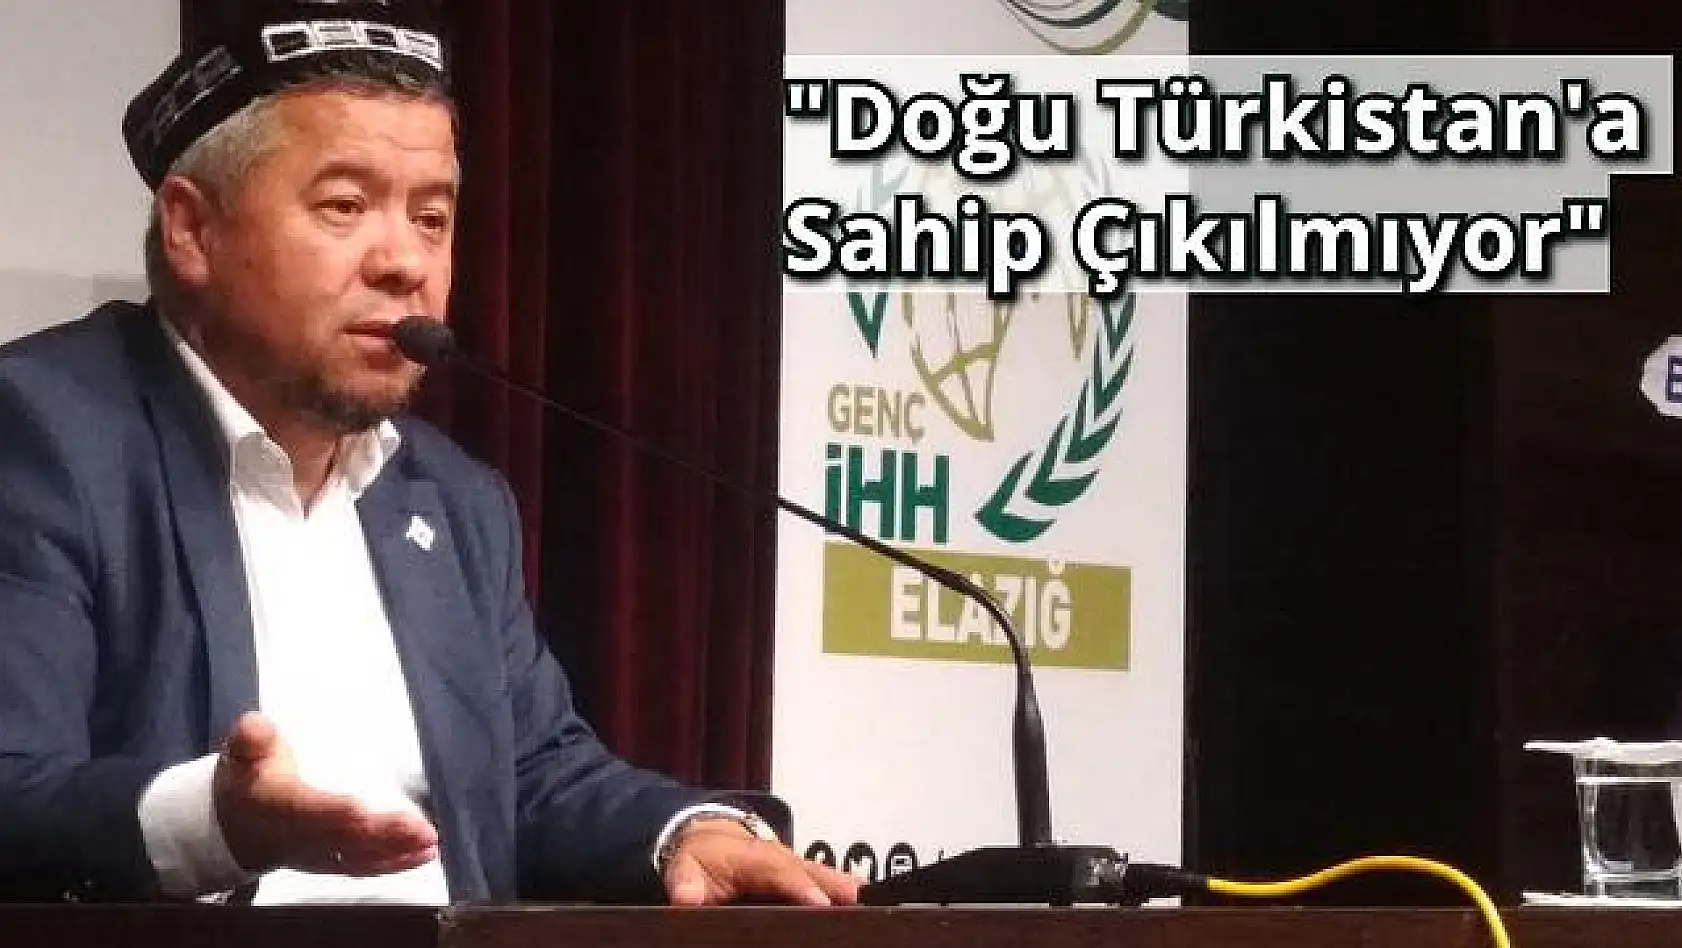  Konferans'ta Doğu Türkistan Anlatıldı